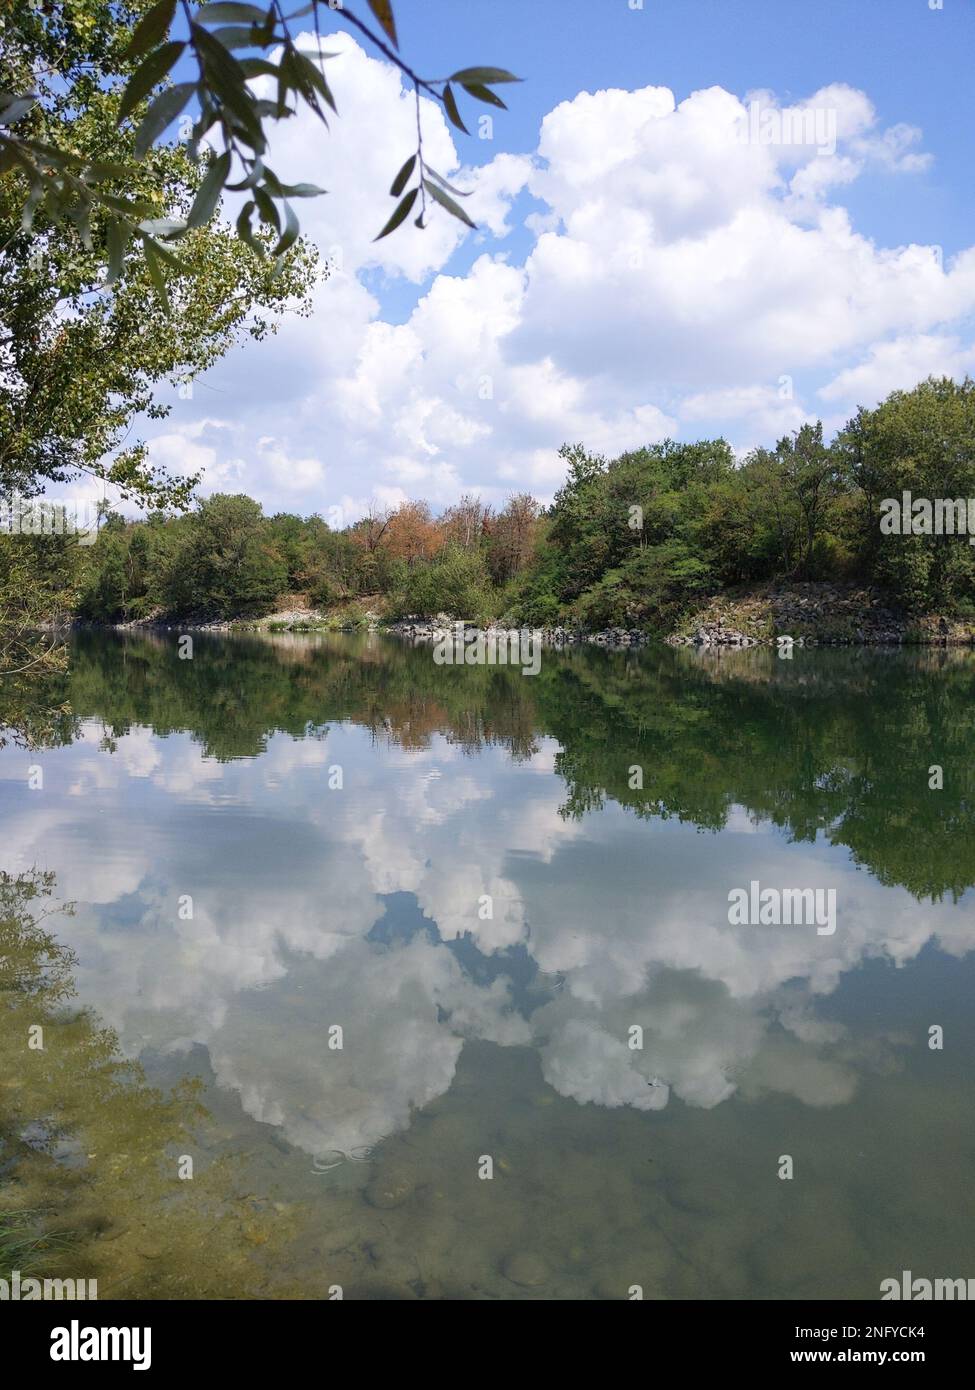 Die Reflexion von flauschigen Wolken auf einem wunderschönen Spiegelsee, umgeben von grüner Vegetation Stockfoto